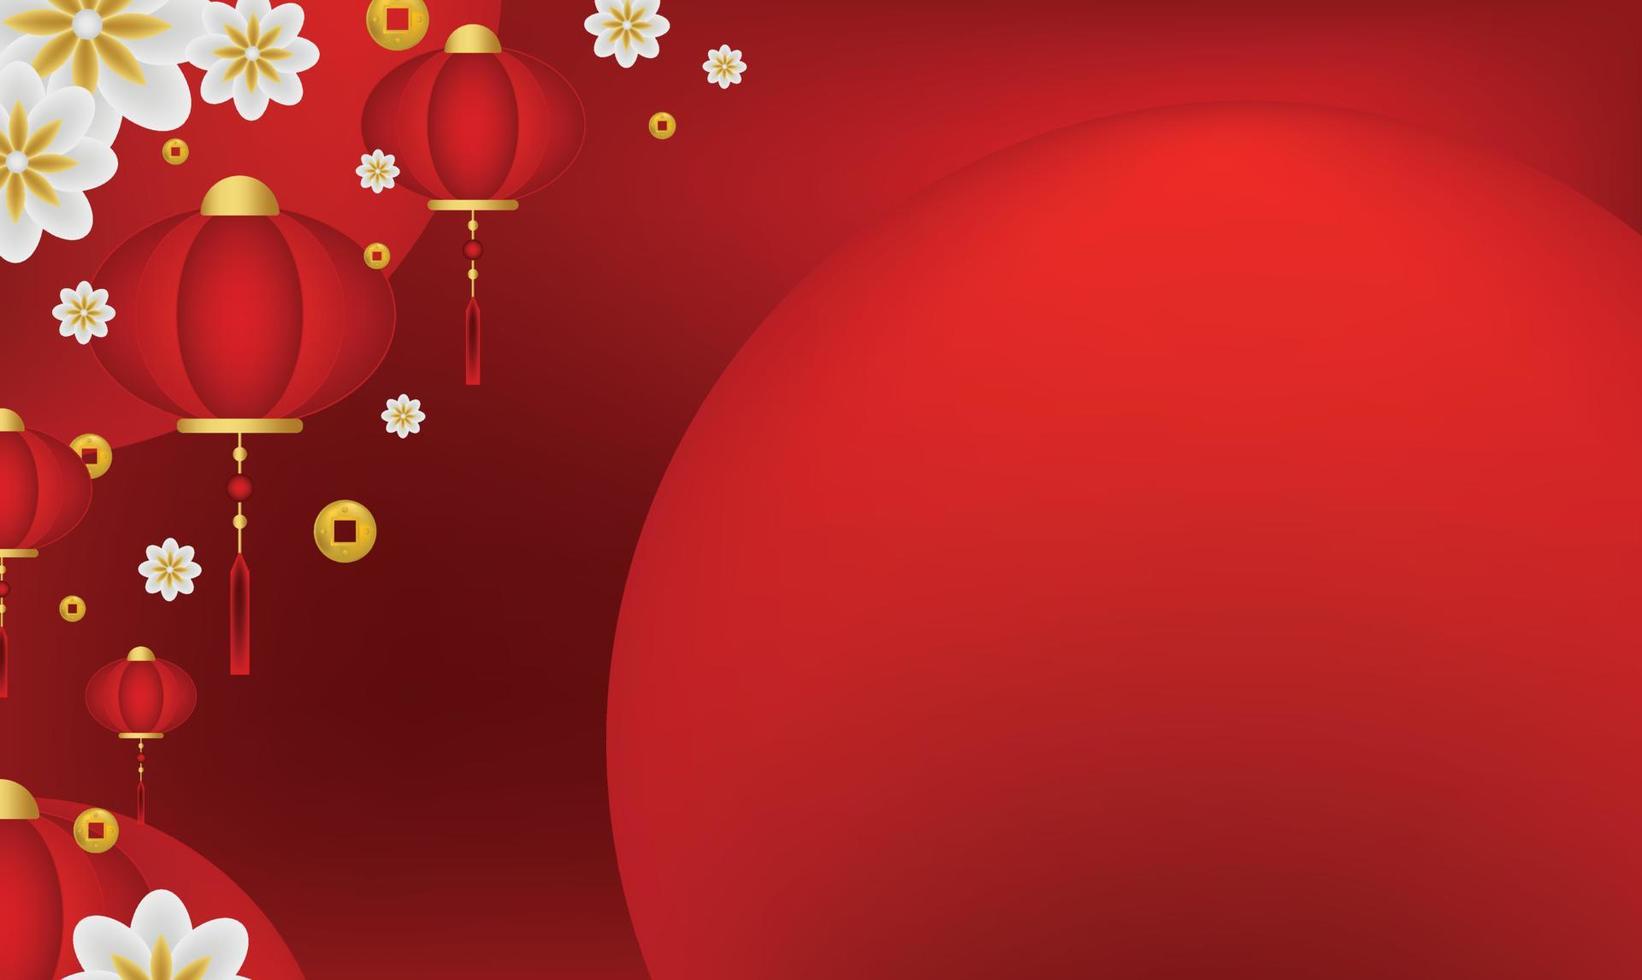 chinesisches neujahr muster abbildung hintergrund tapete banner vorlage flyer poster event label kulisse modern vektor design konzept premium farbe digital karte ornamental schwarz gold luxus